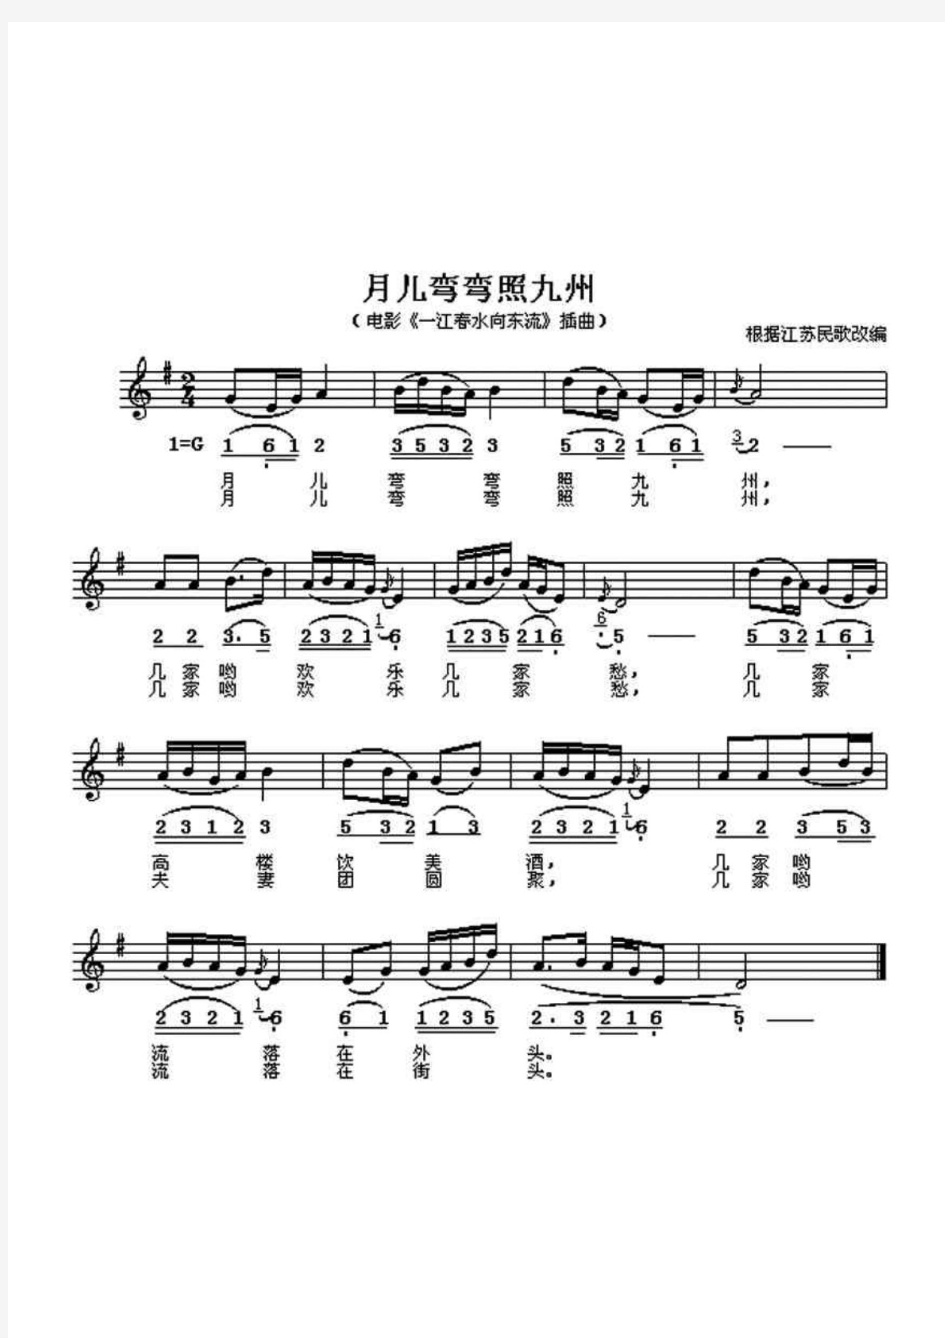 月儿弯弯照九州  简谱 五线谱 钢琴谱 正谱.pdf